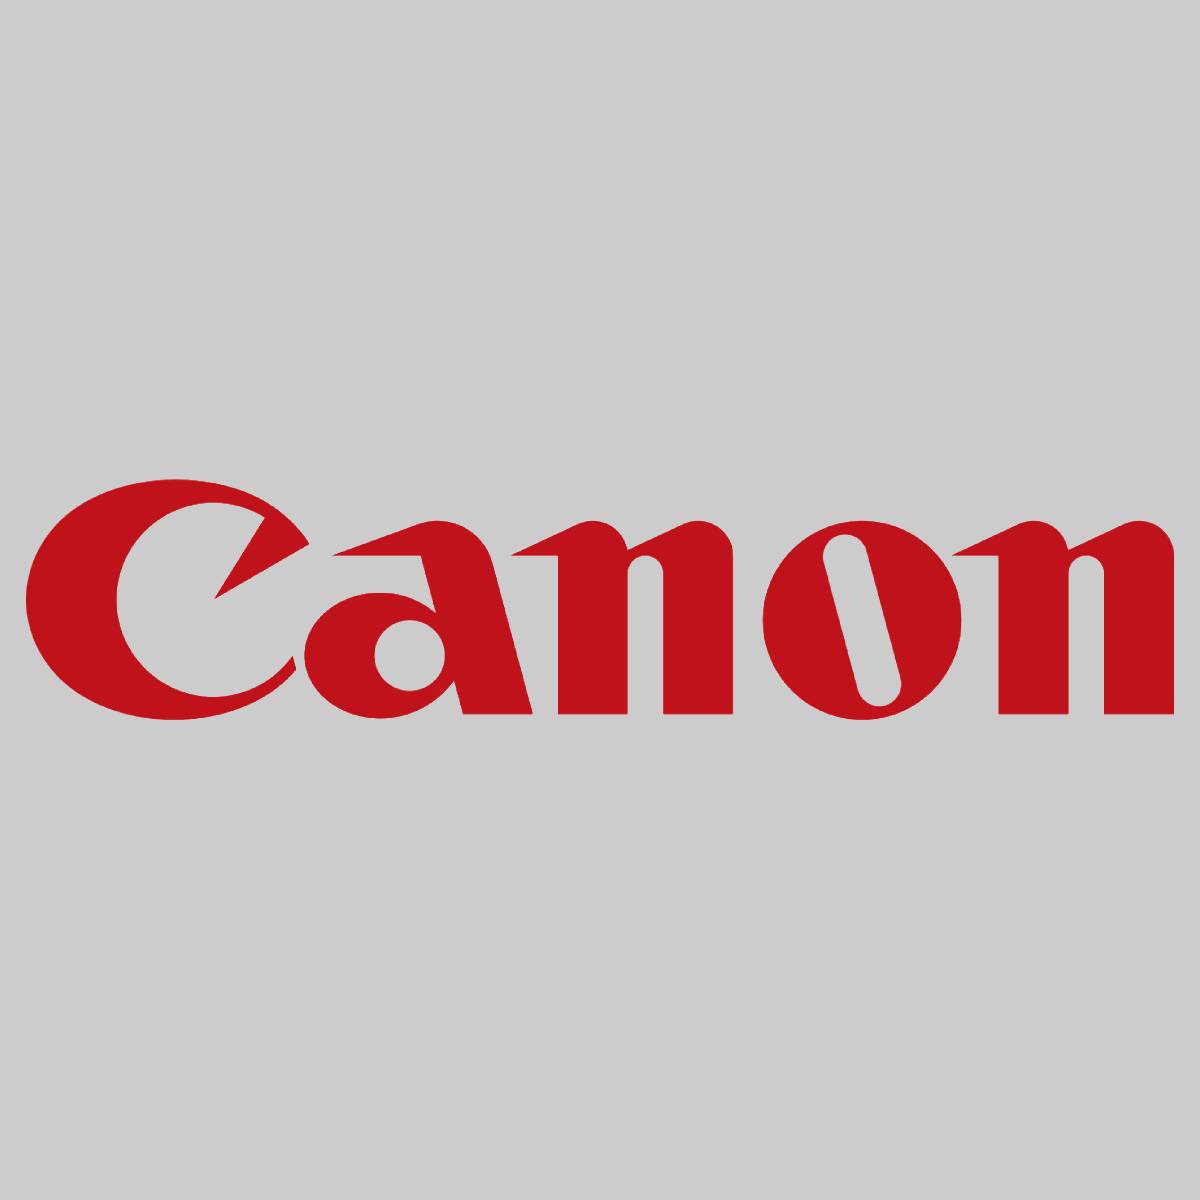 "Originální přenosový válec Canon 1 FC8-6852-000 pro imagePRESS C6000 C7000 NOVINKA^